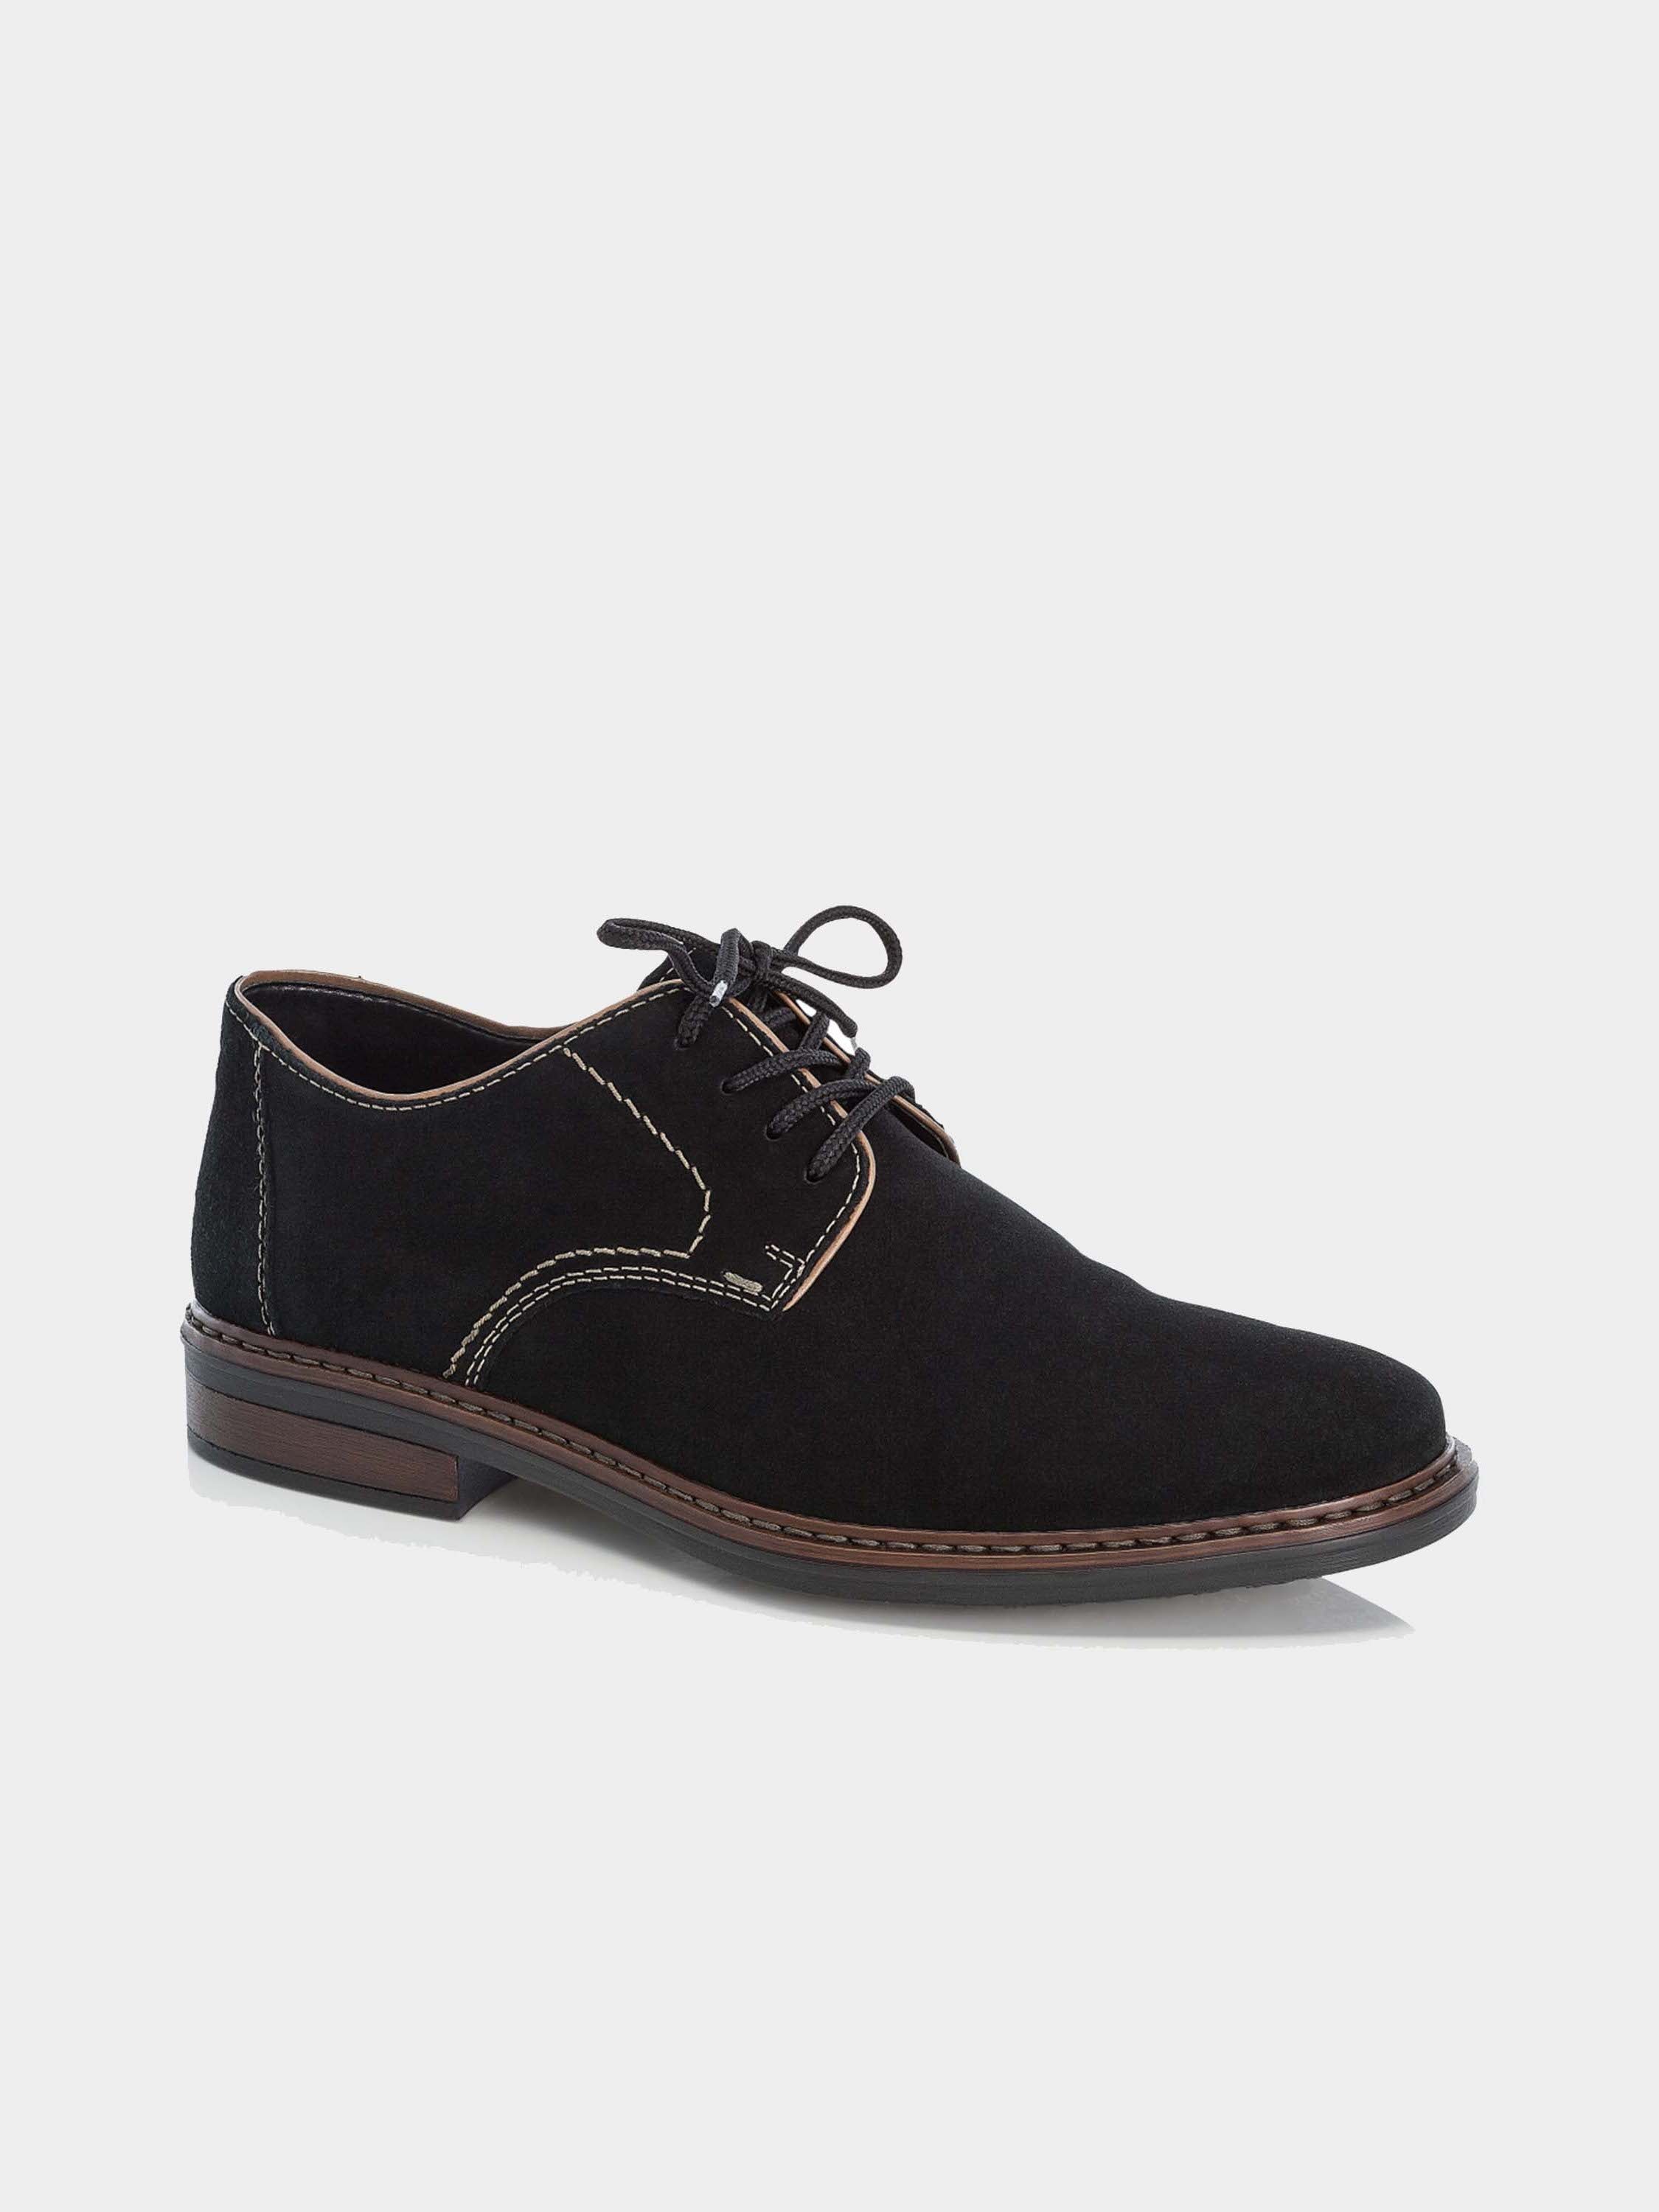 Rieker 17622 Men's Formal Suede Shoes #color_Black